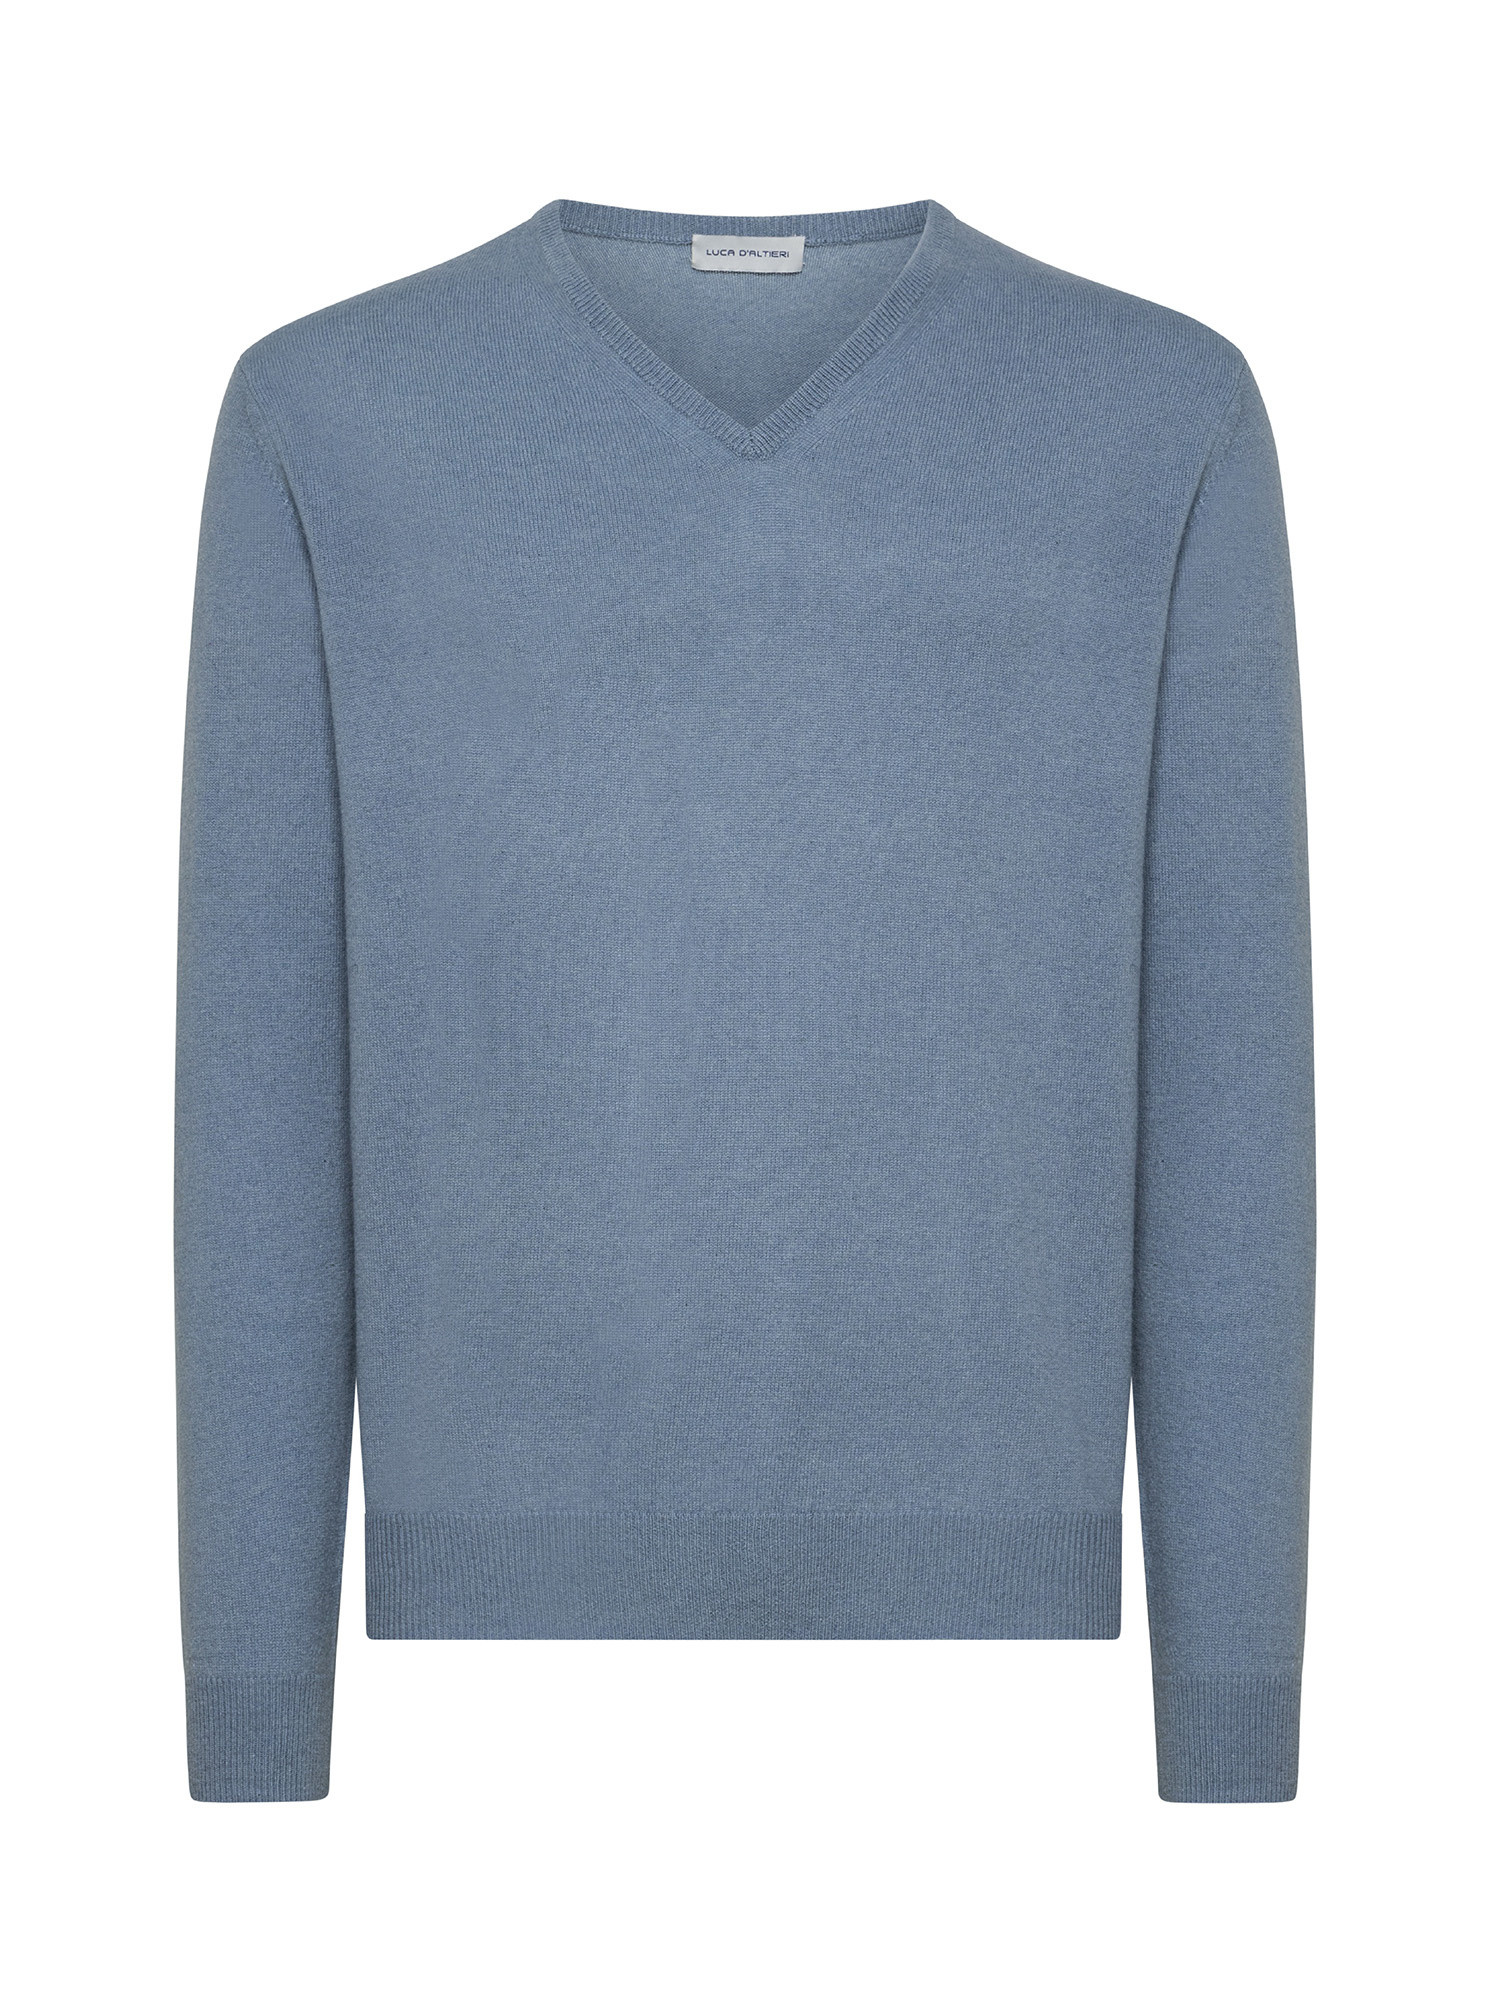 Пуловер с V-образным вырезом из чистого кашемира Luca D'Altieri, голубой